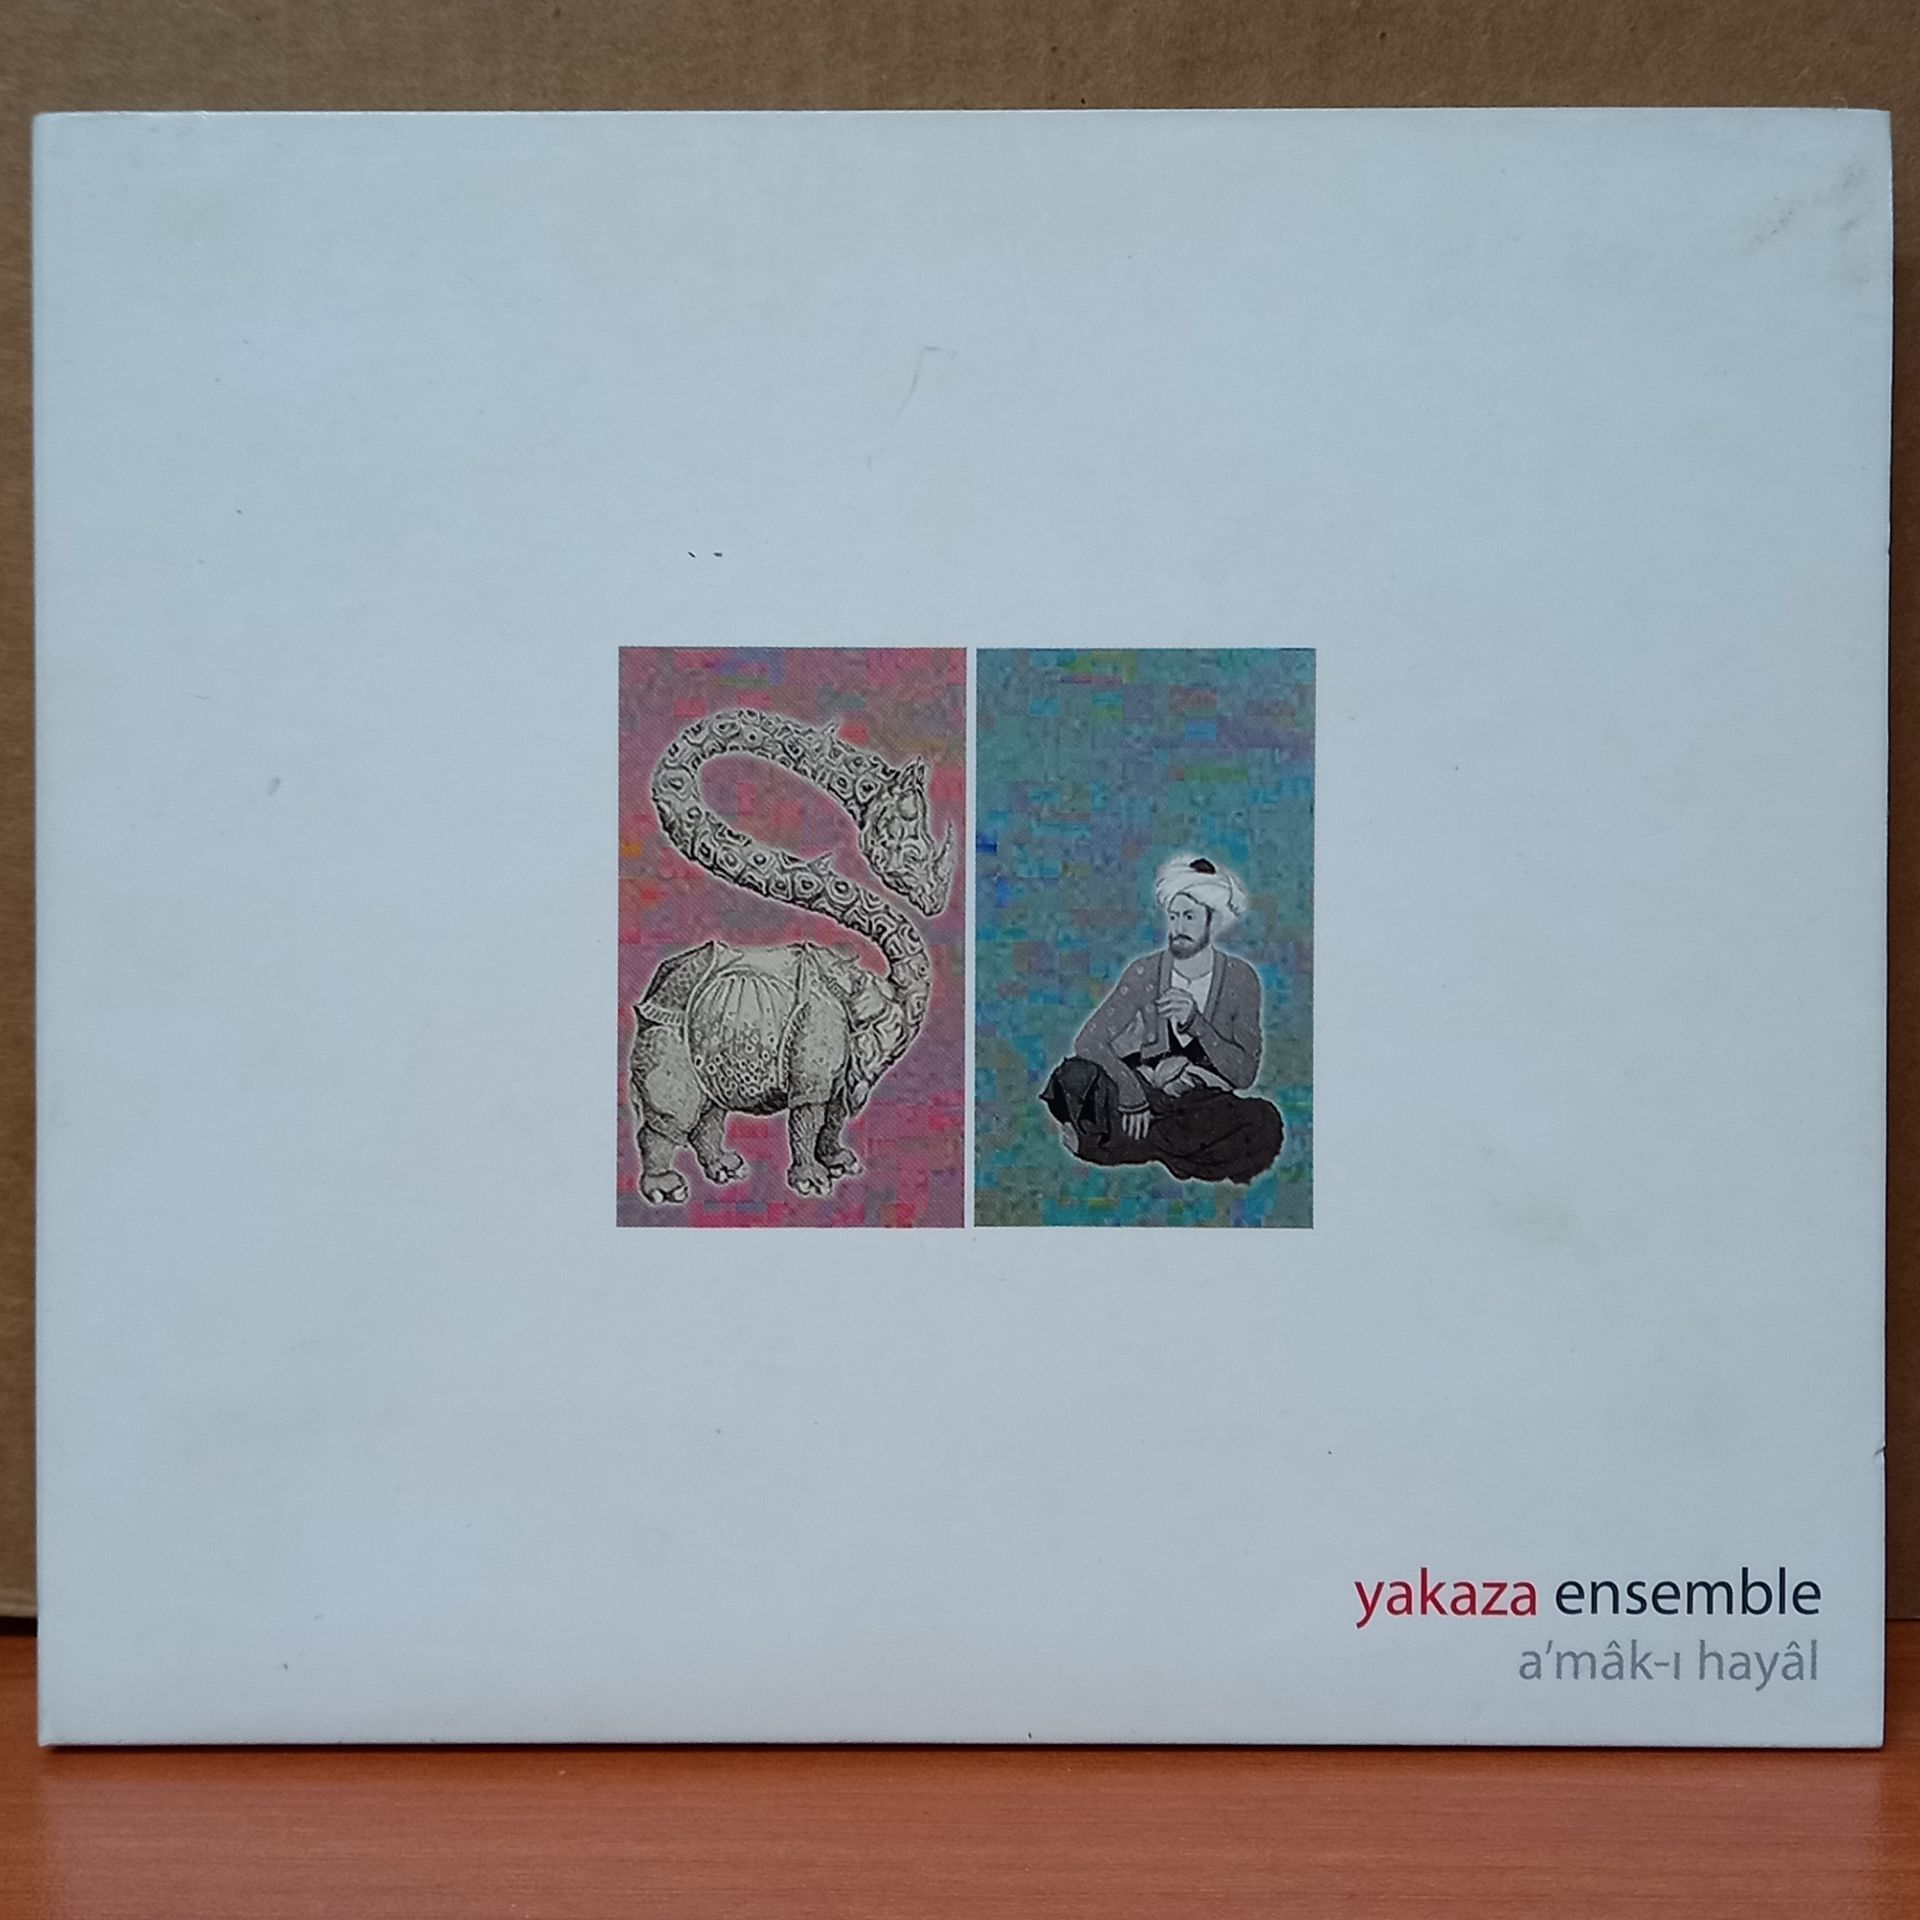 YAKAZA ENSEMBLE – AMAK-I HAYAL (2010) - CD 2.EL